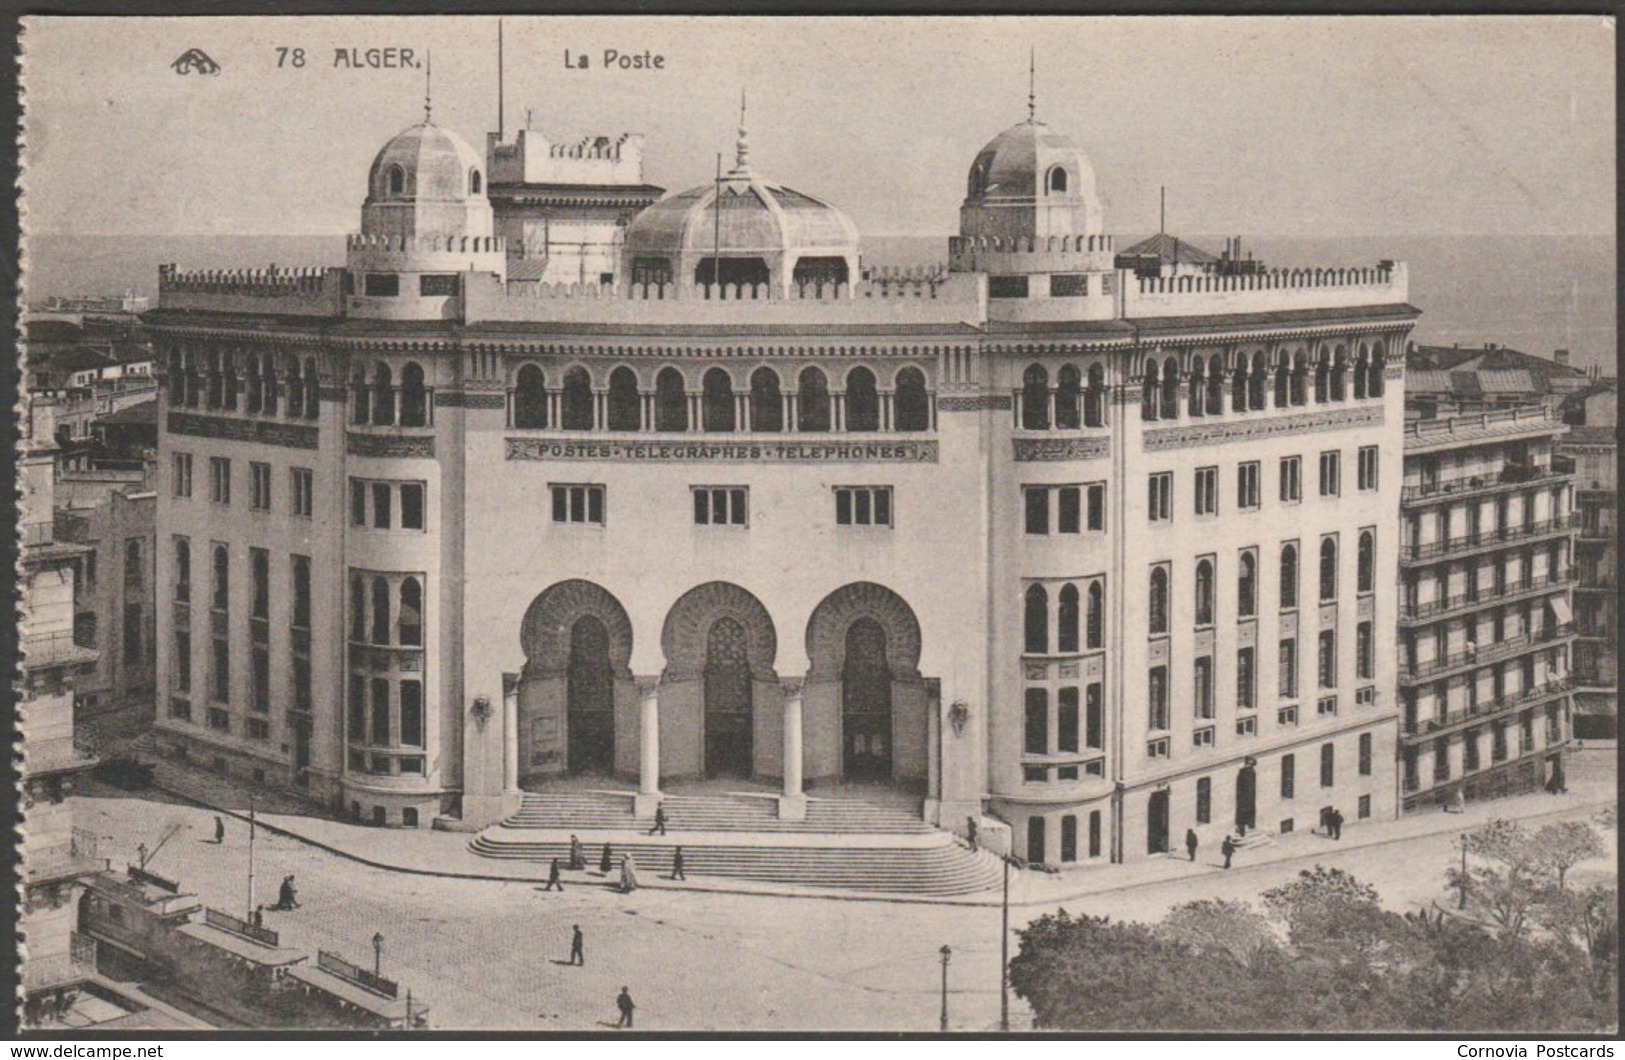 La Poste, Alger, C.1910s - CAP CPA - Algiers